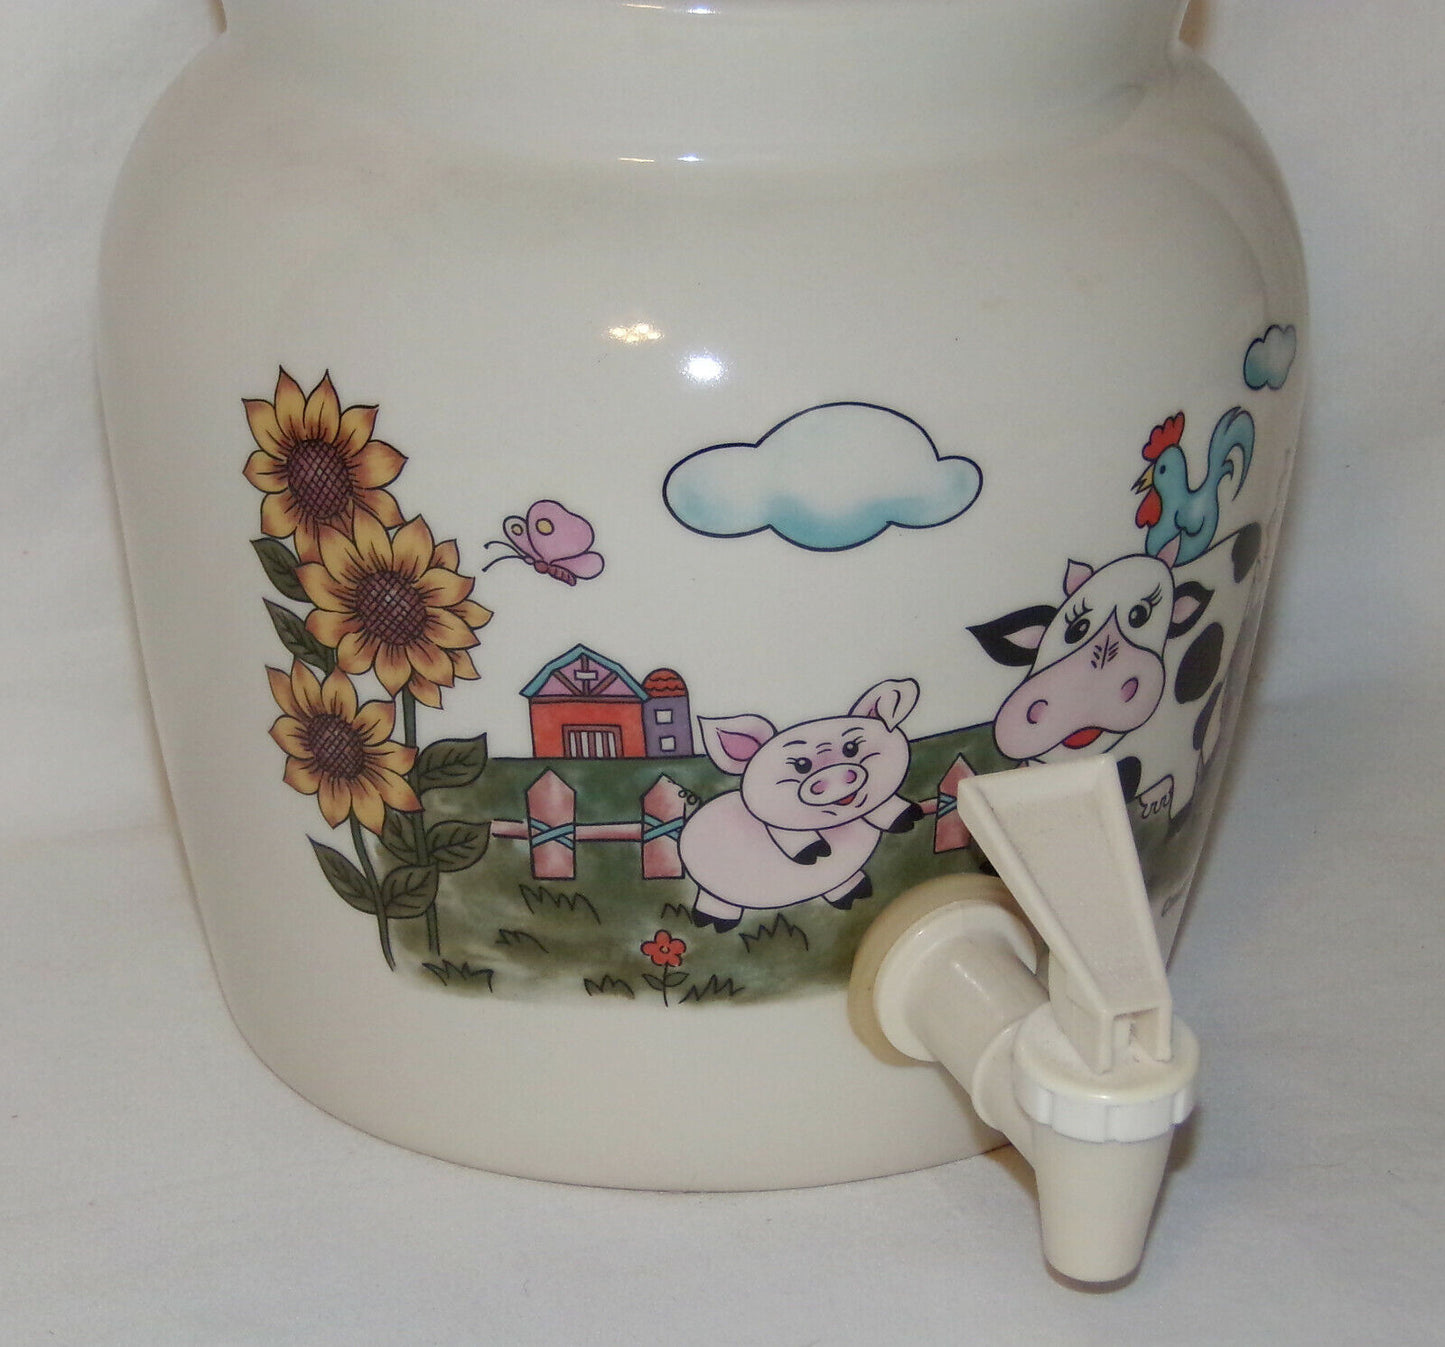 Vintage Crock Jug w Spout 1/2 Gallon Water Tea Lemonade Lidded Dispenser Farm Scene